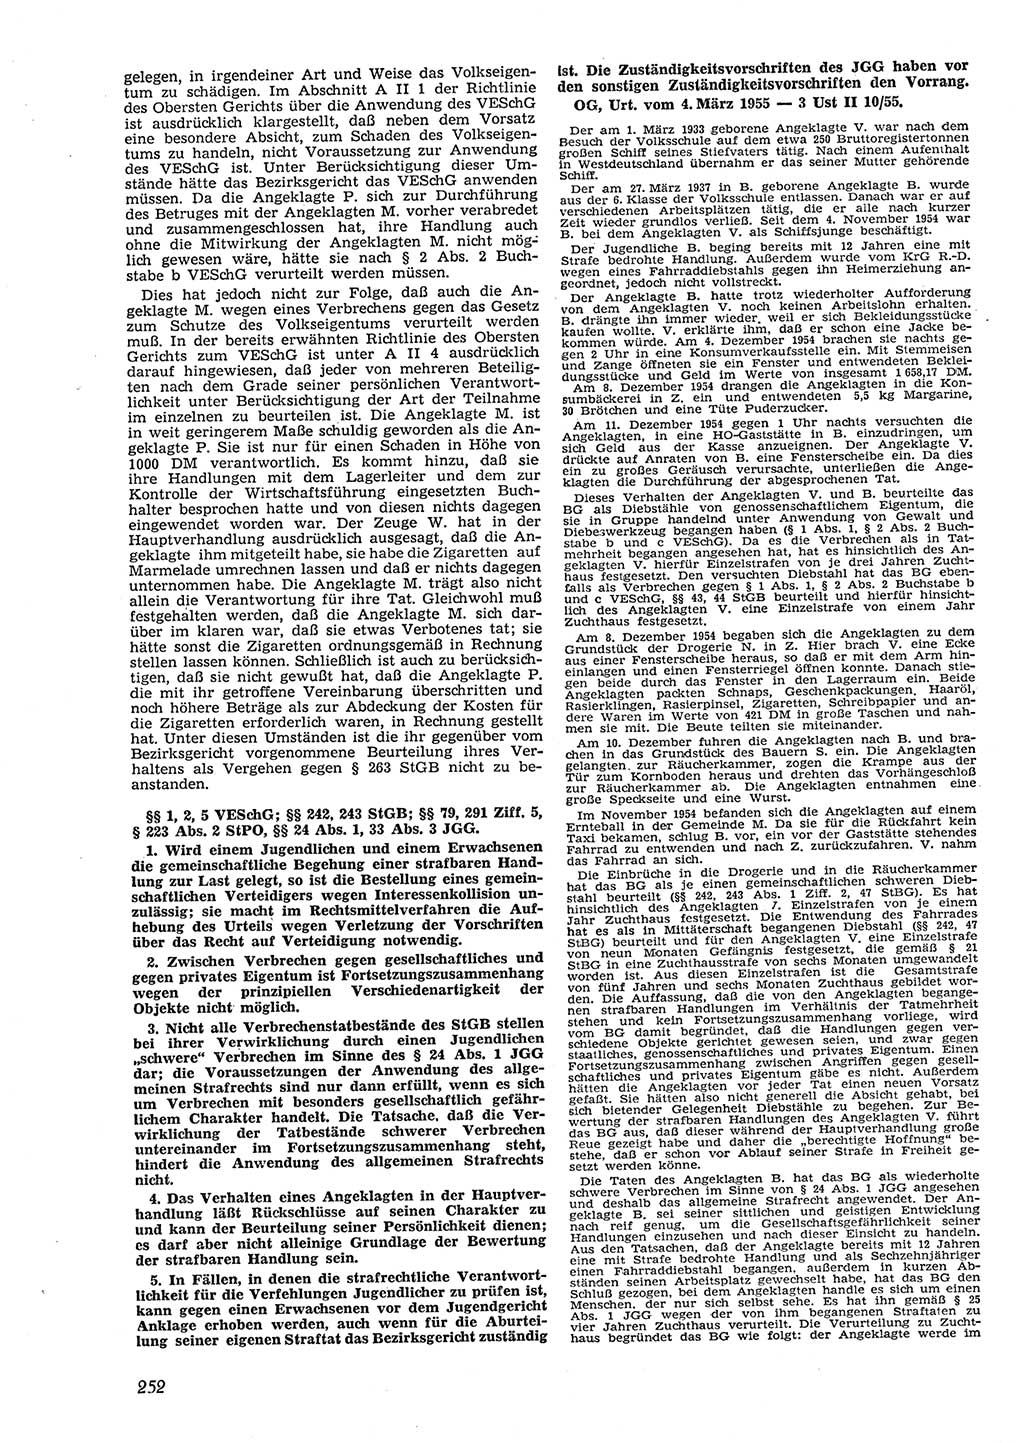 Neue Justiz (NJ), Zeitschrift für Recht und Rechtswissenschaft [Deutsche Demokratische Republik (DDR)], 9. Jahrgang 1955, Seite 252 (NJ DDR 1955, S. 252)